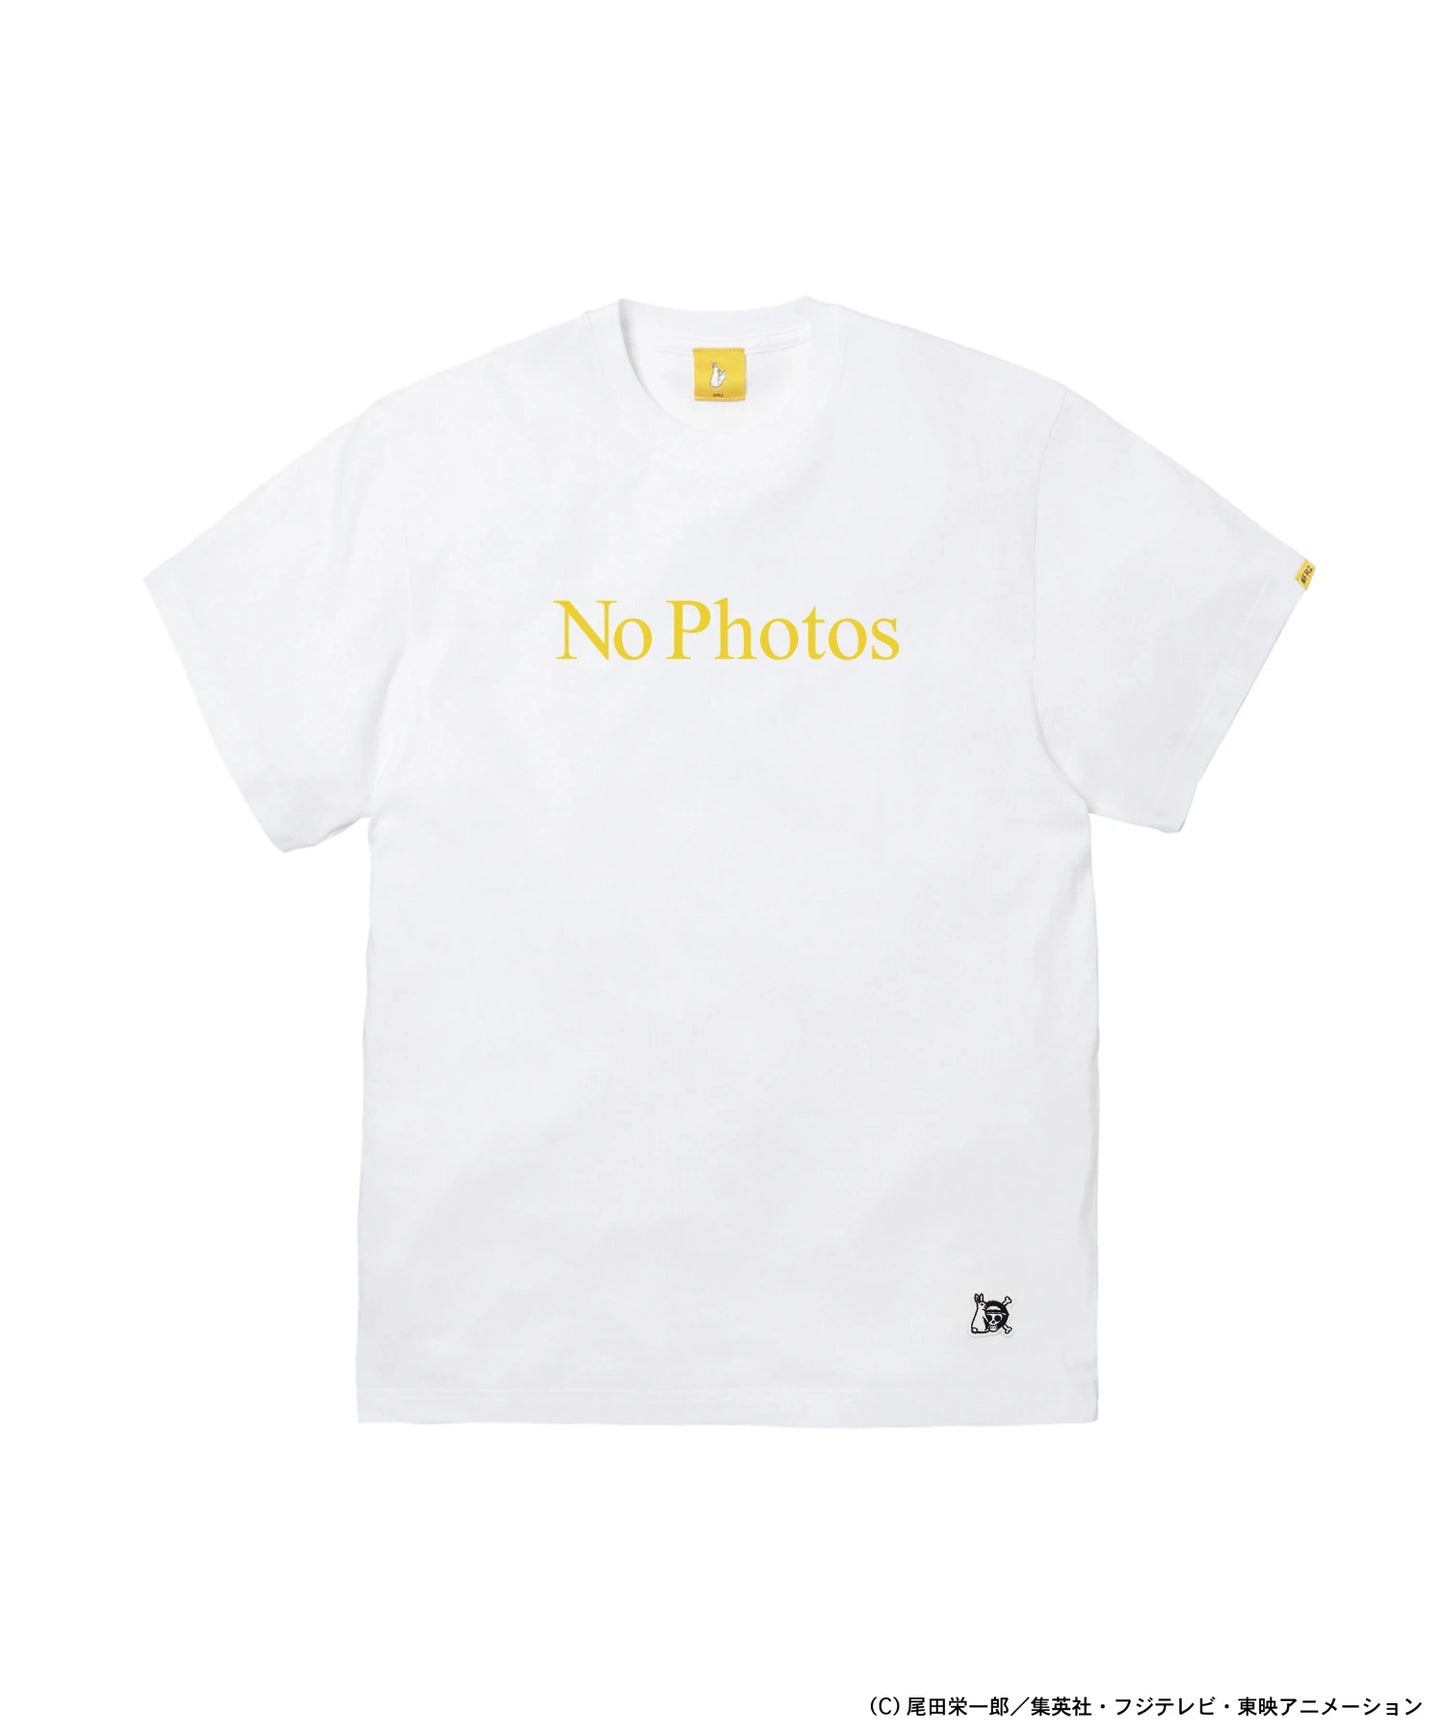 #FR2 x One Piece Sanji No Photos t-shirt (white)